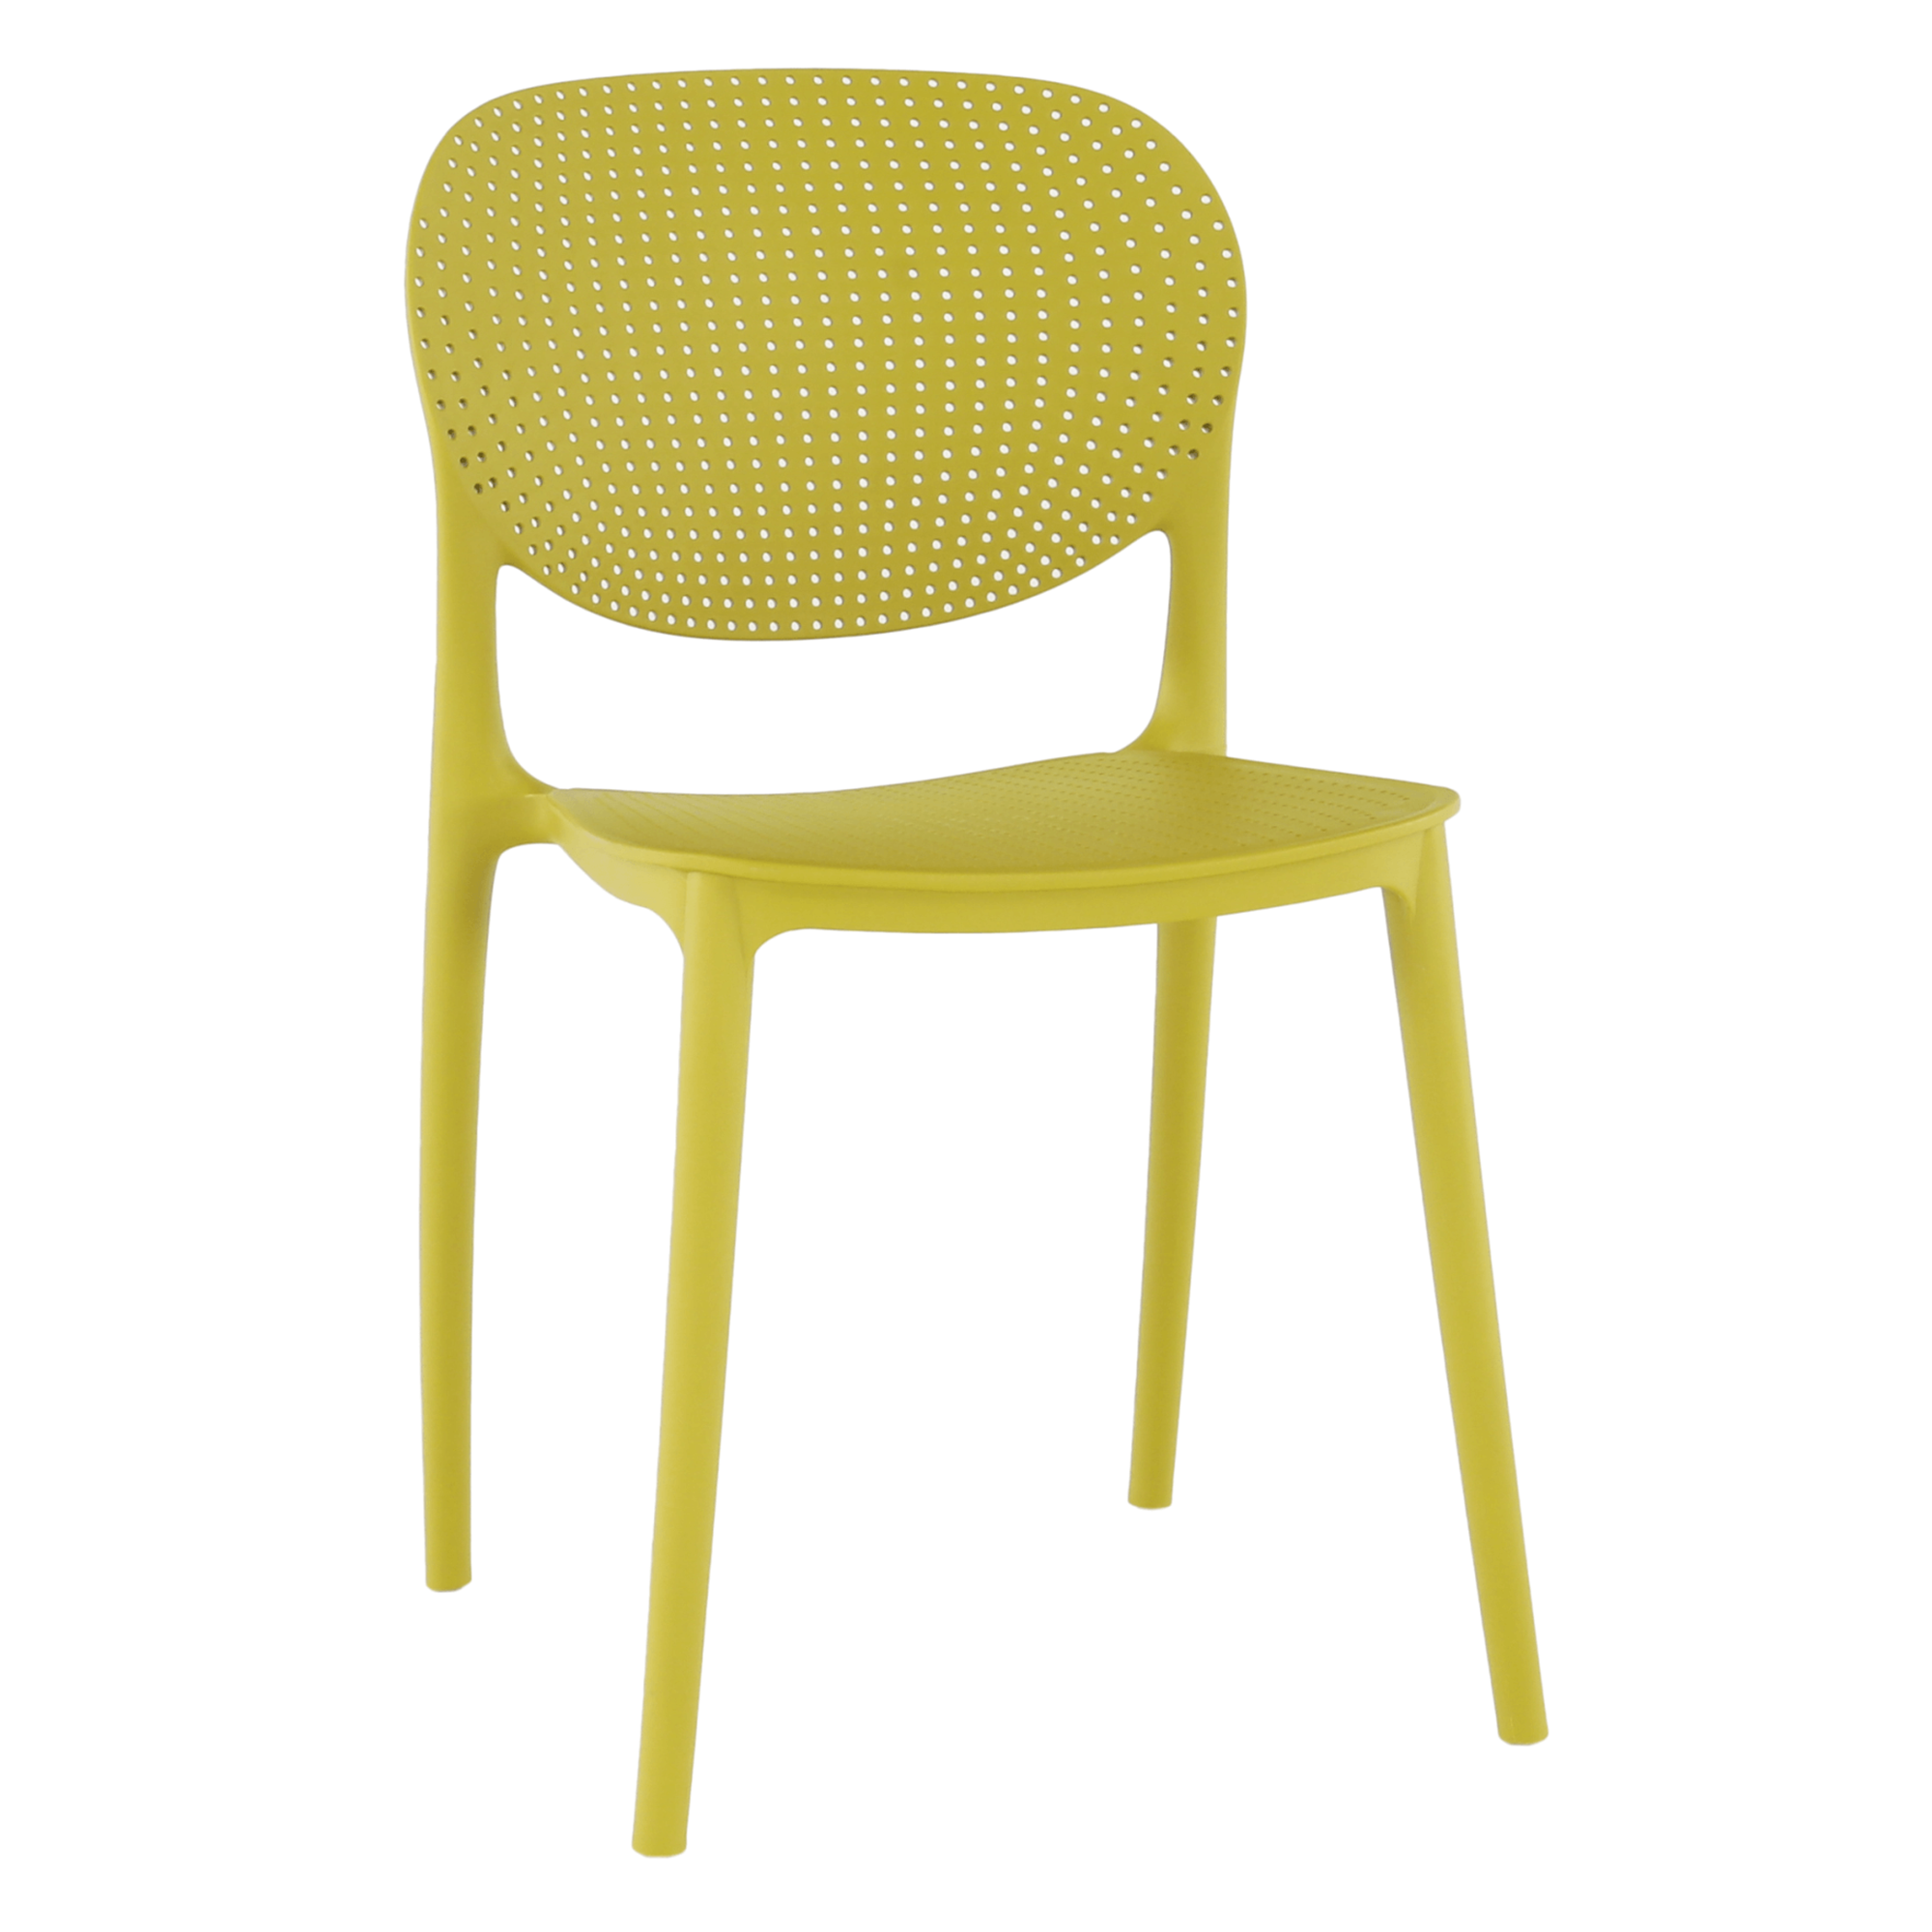 FEDRA NEW rakásolható szék, sárga, 